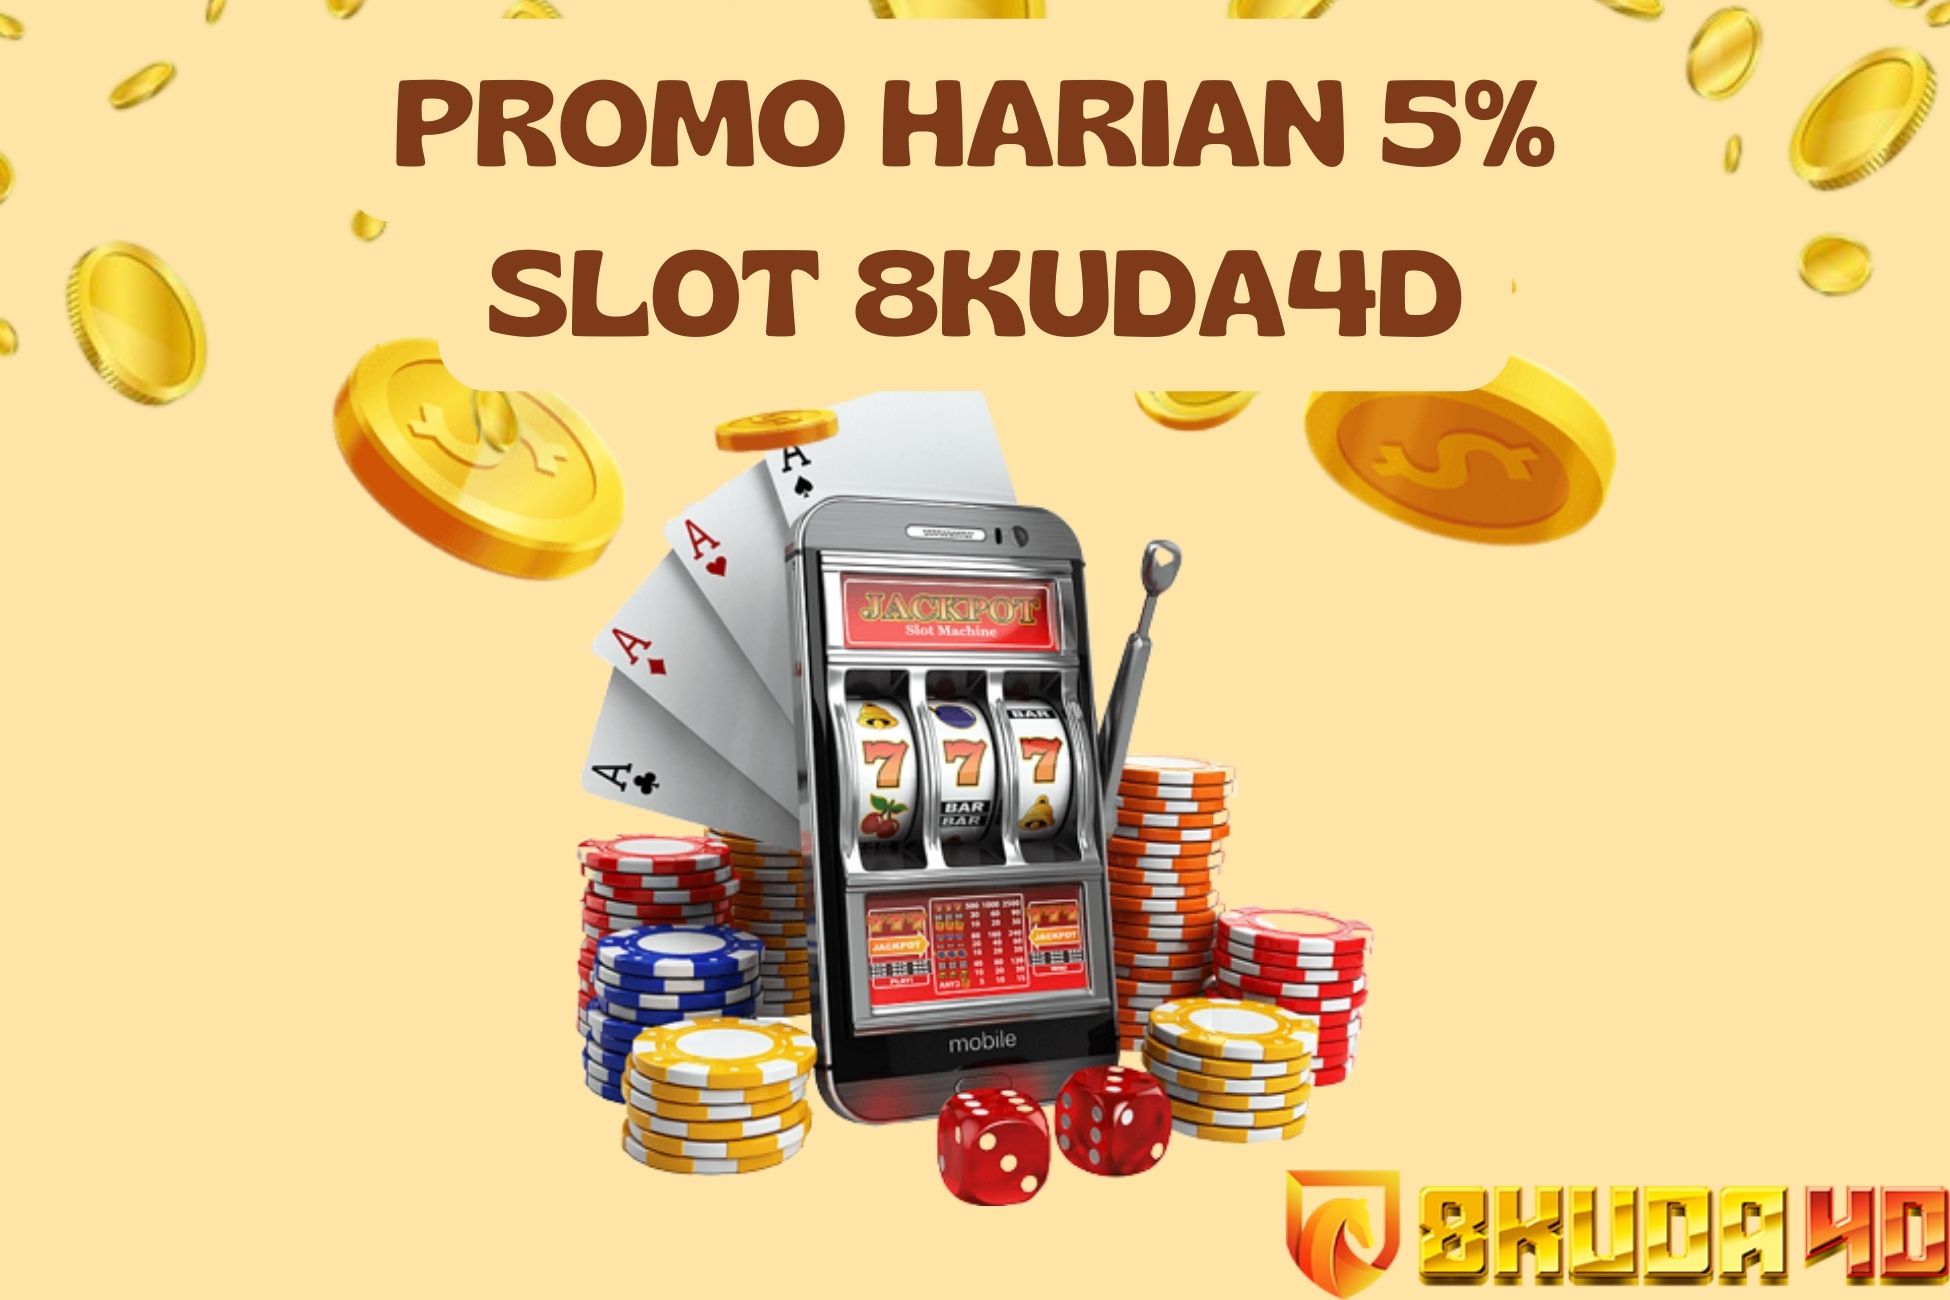 Promo Harian 5% Slot 8Kuda4D